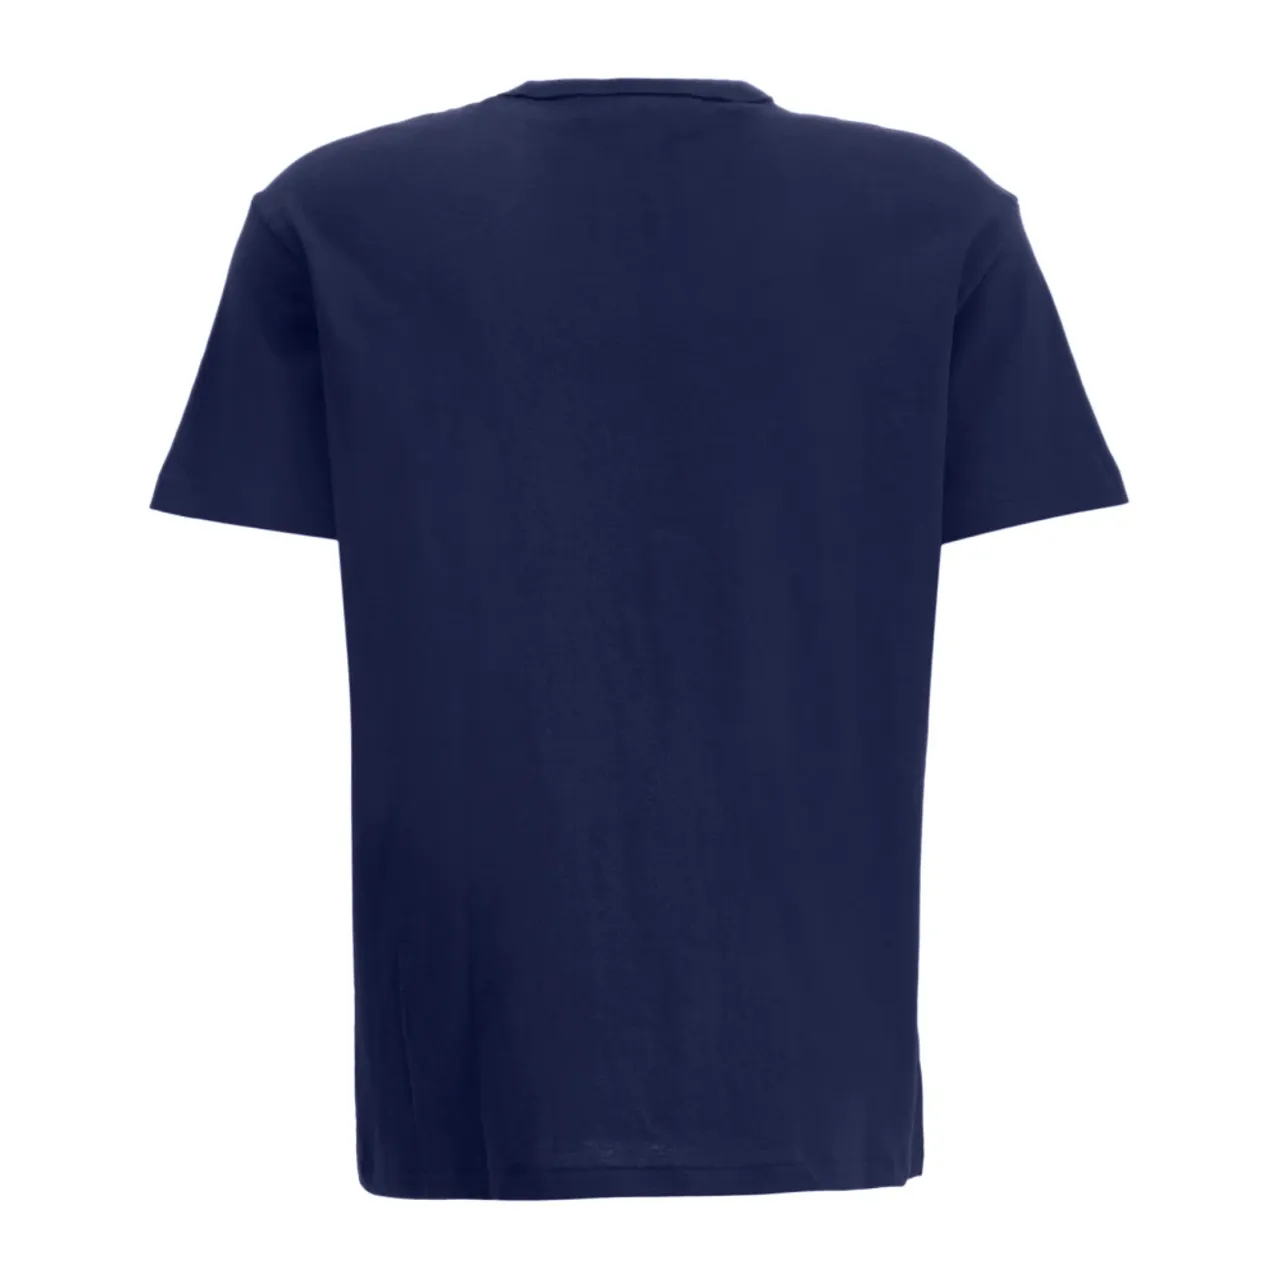 Navy Baumwoll T-Shirt - Regular Fit Ralph Lauren